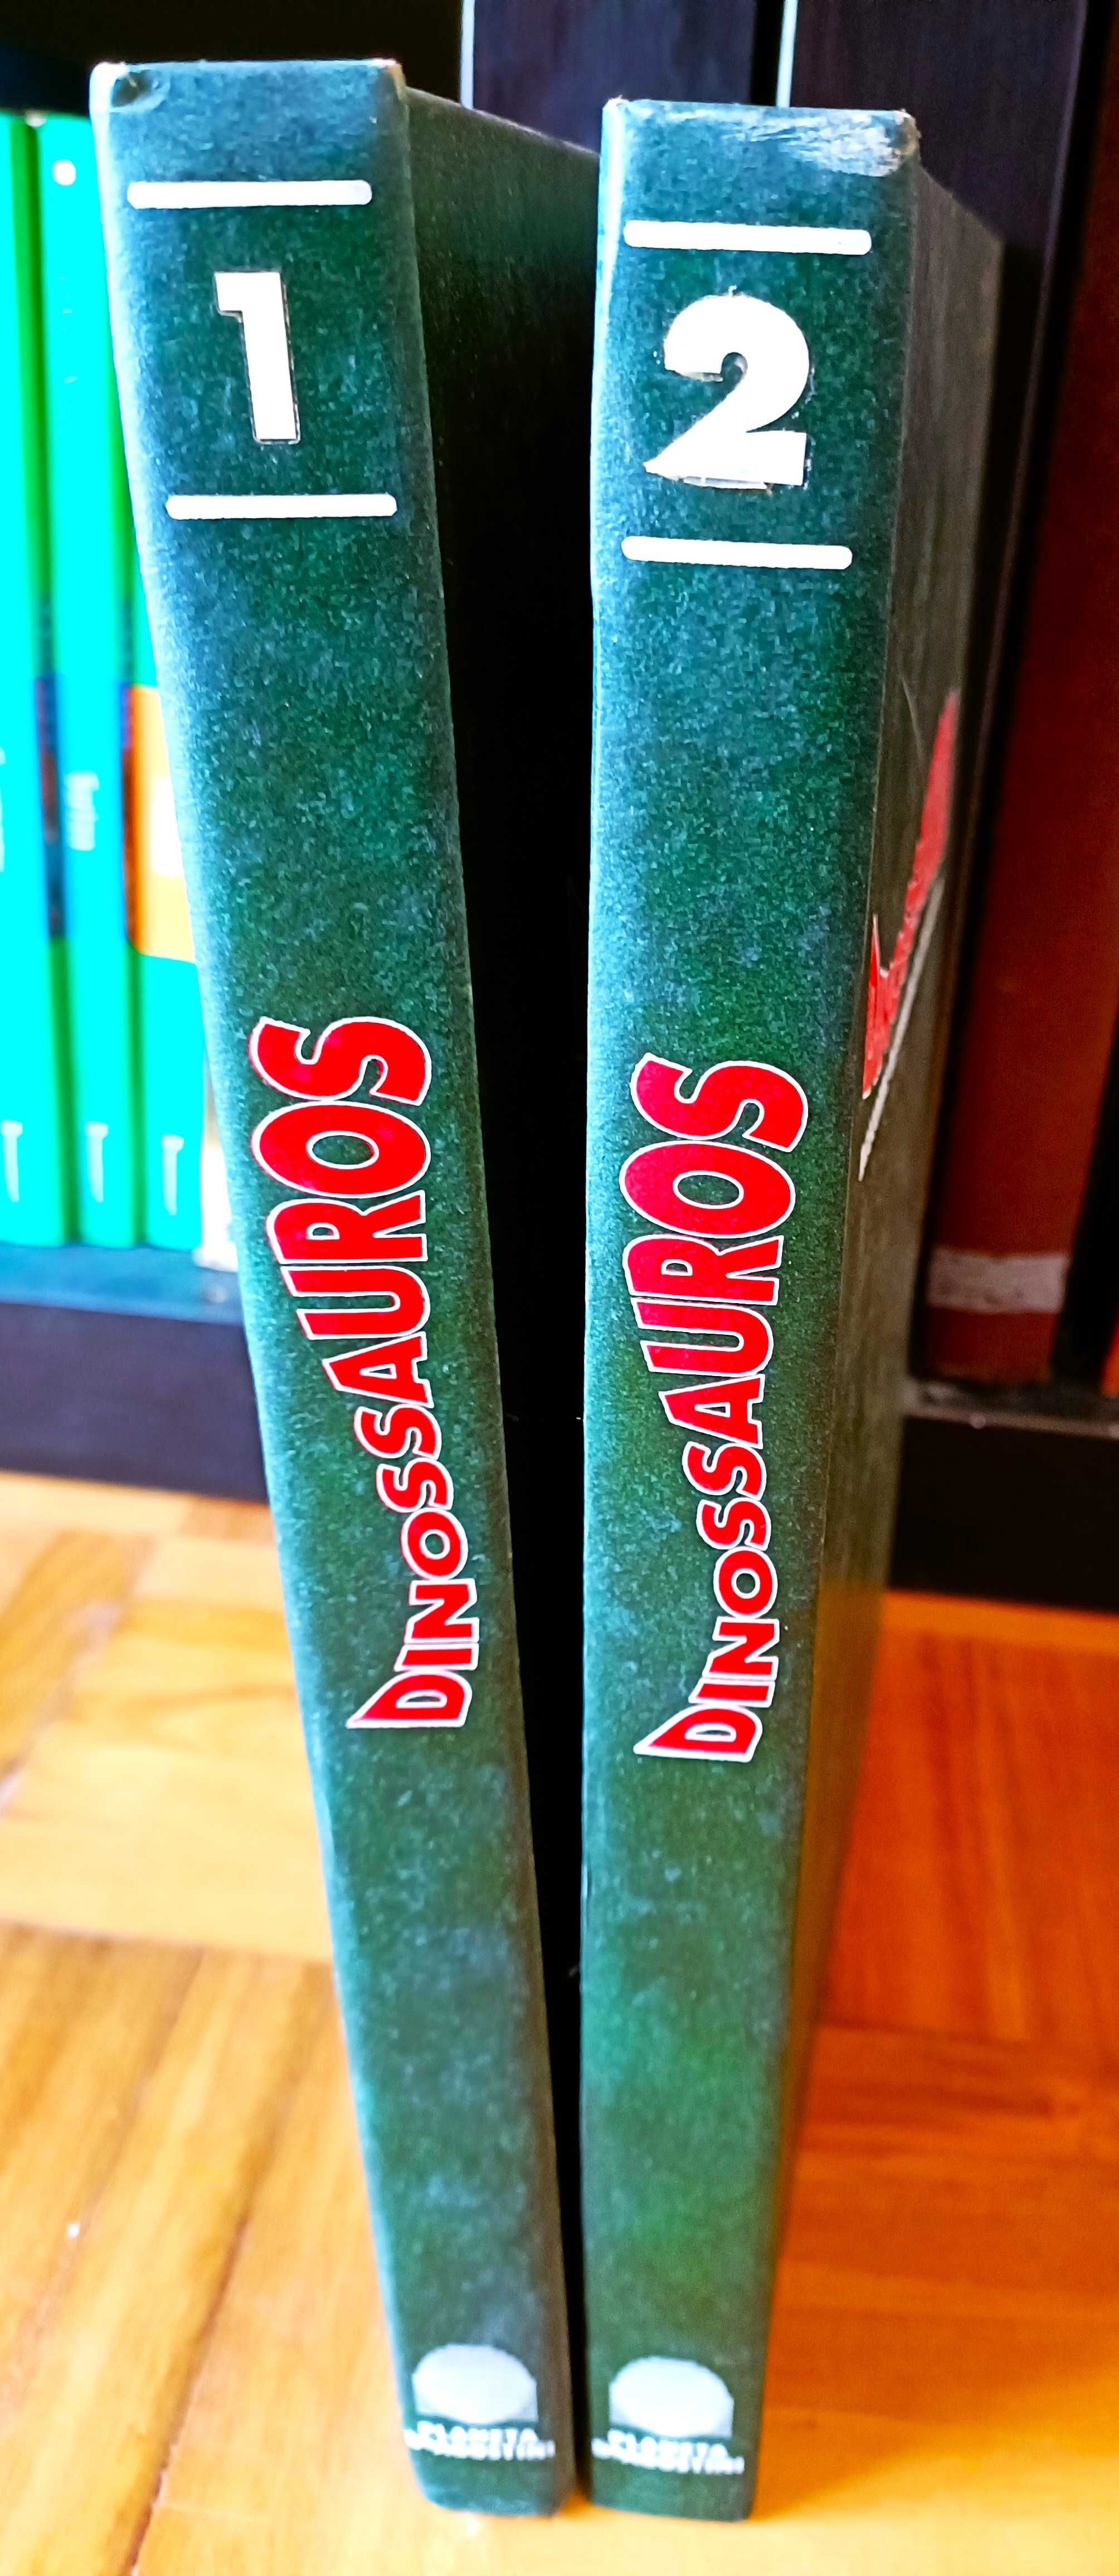 Conjunto de 2 volumes da colecção "Dinossauros"